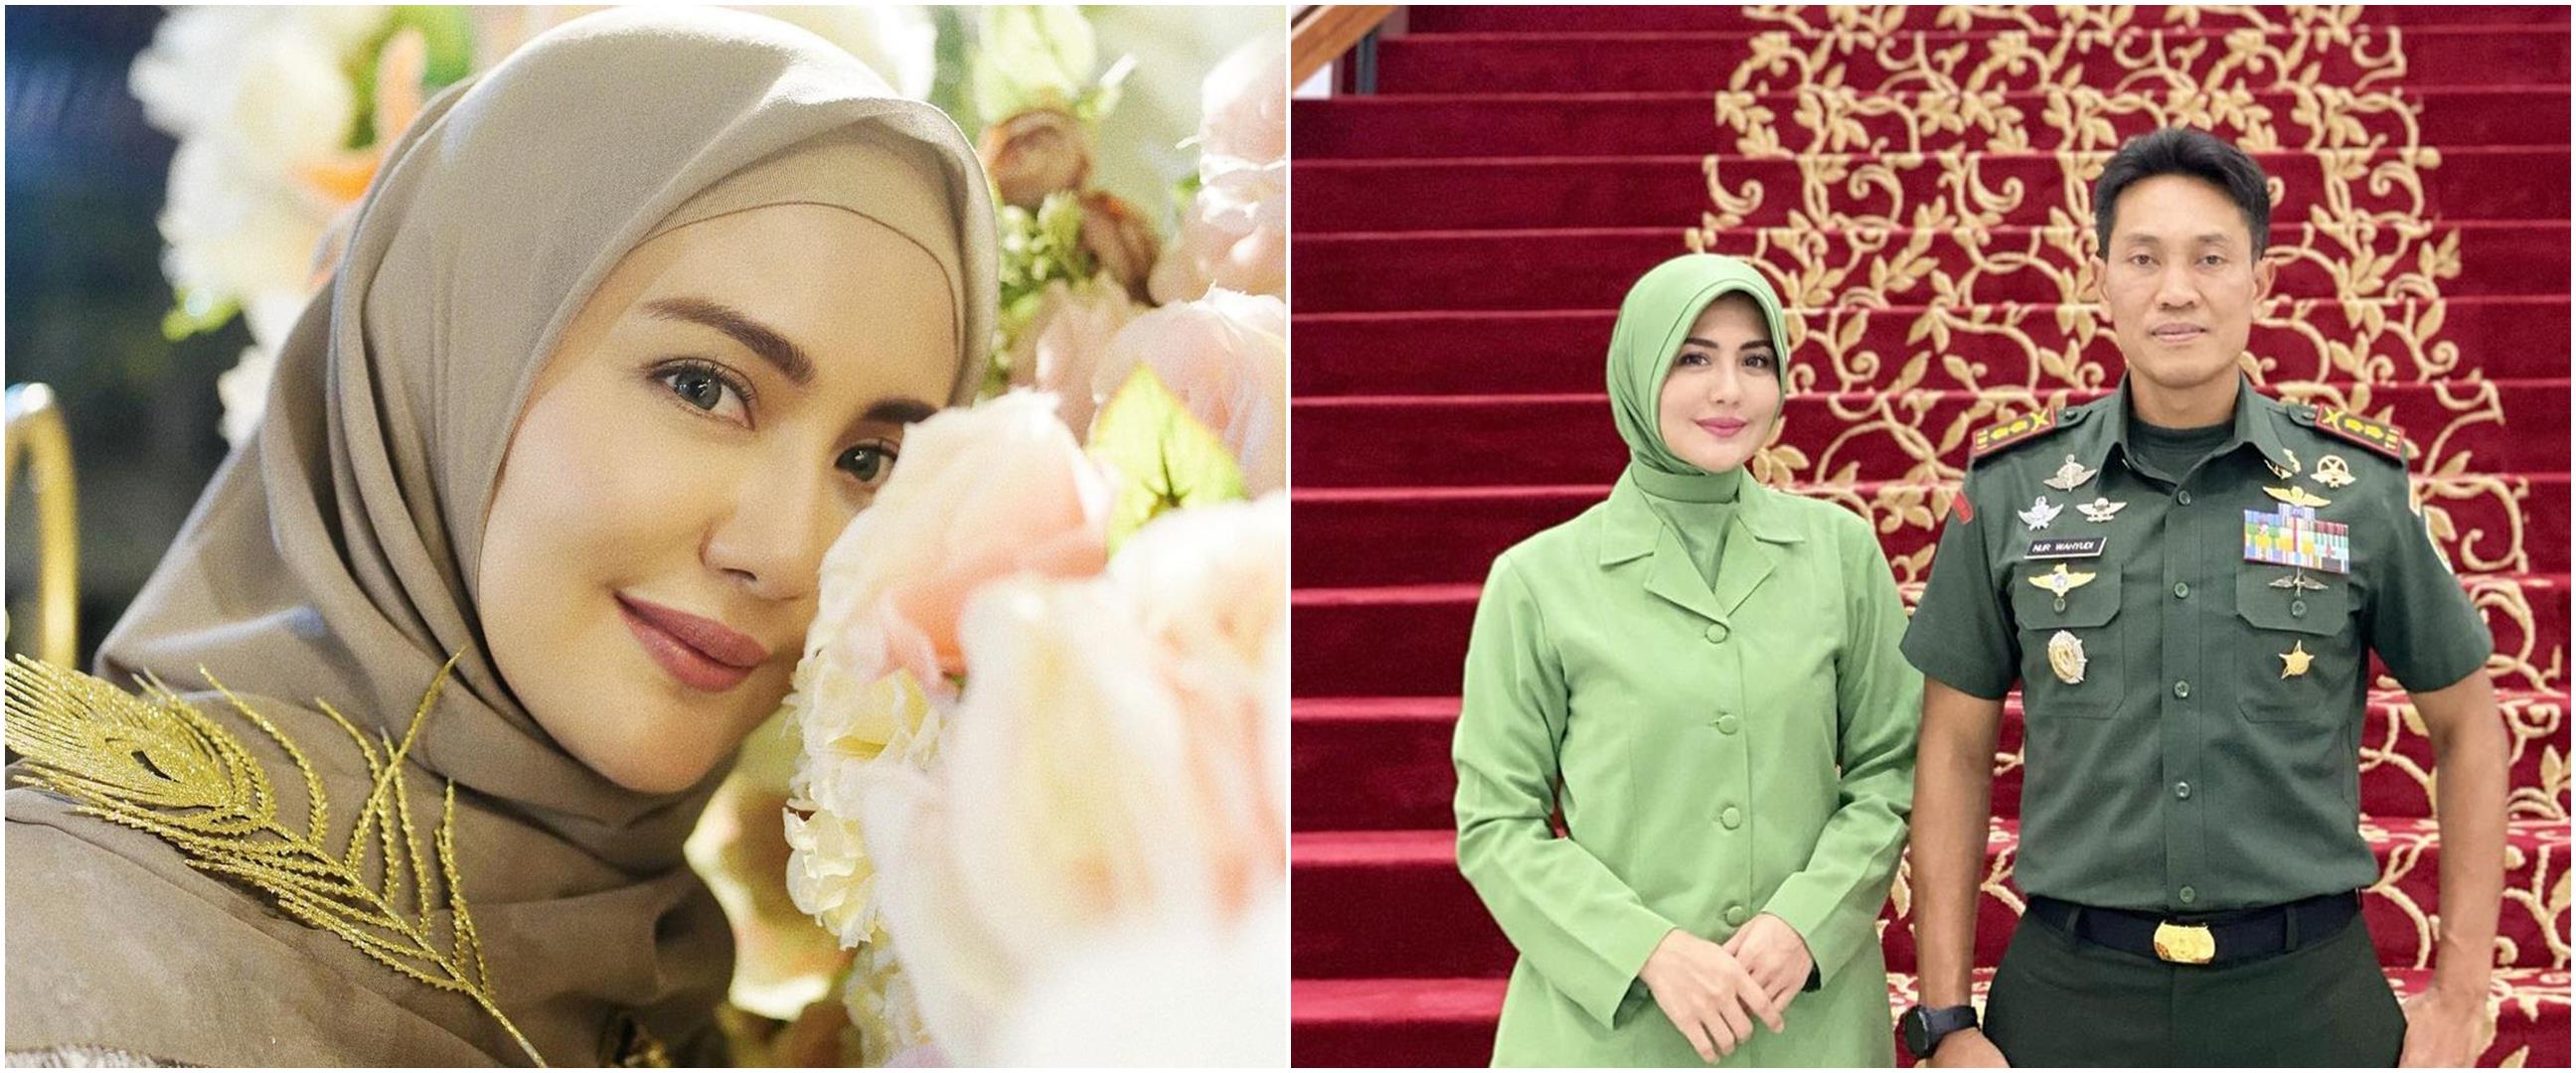 Juliana Moechtar umumkan akan menikah, bakal jadi istri TNI